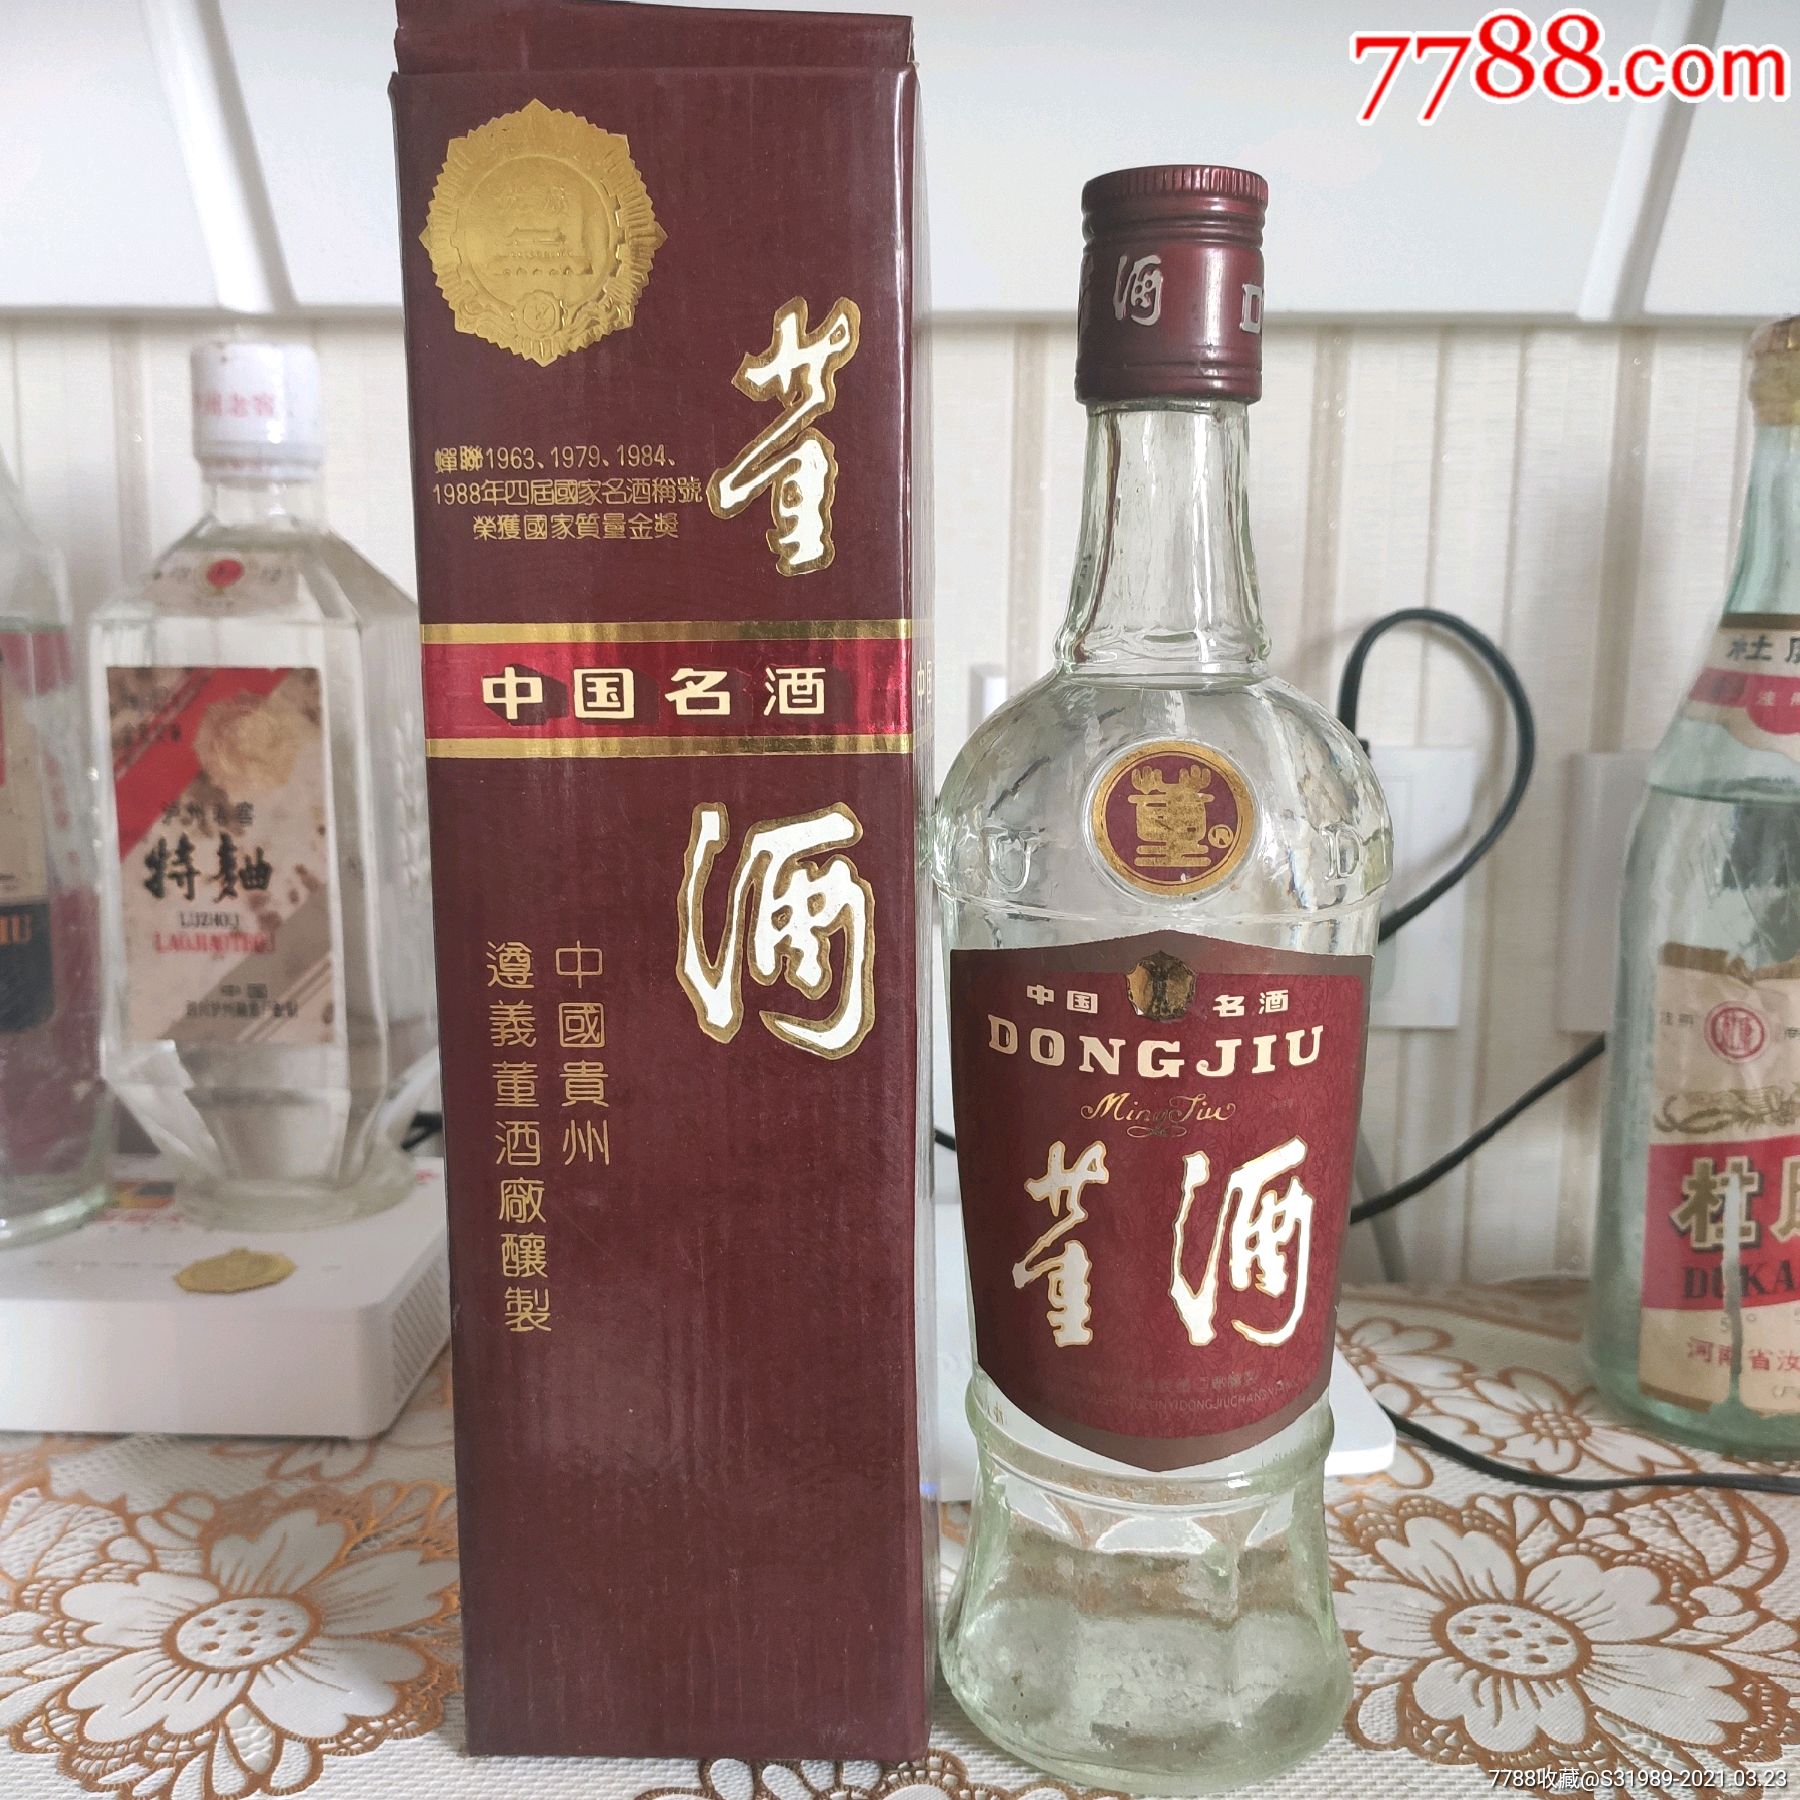 【凯购老酒】1999年泸州老窖特曲 48度 500ml 一件6瓶 陈年白酒 - 阿里资产